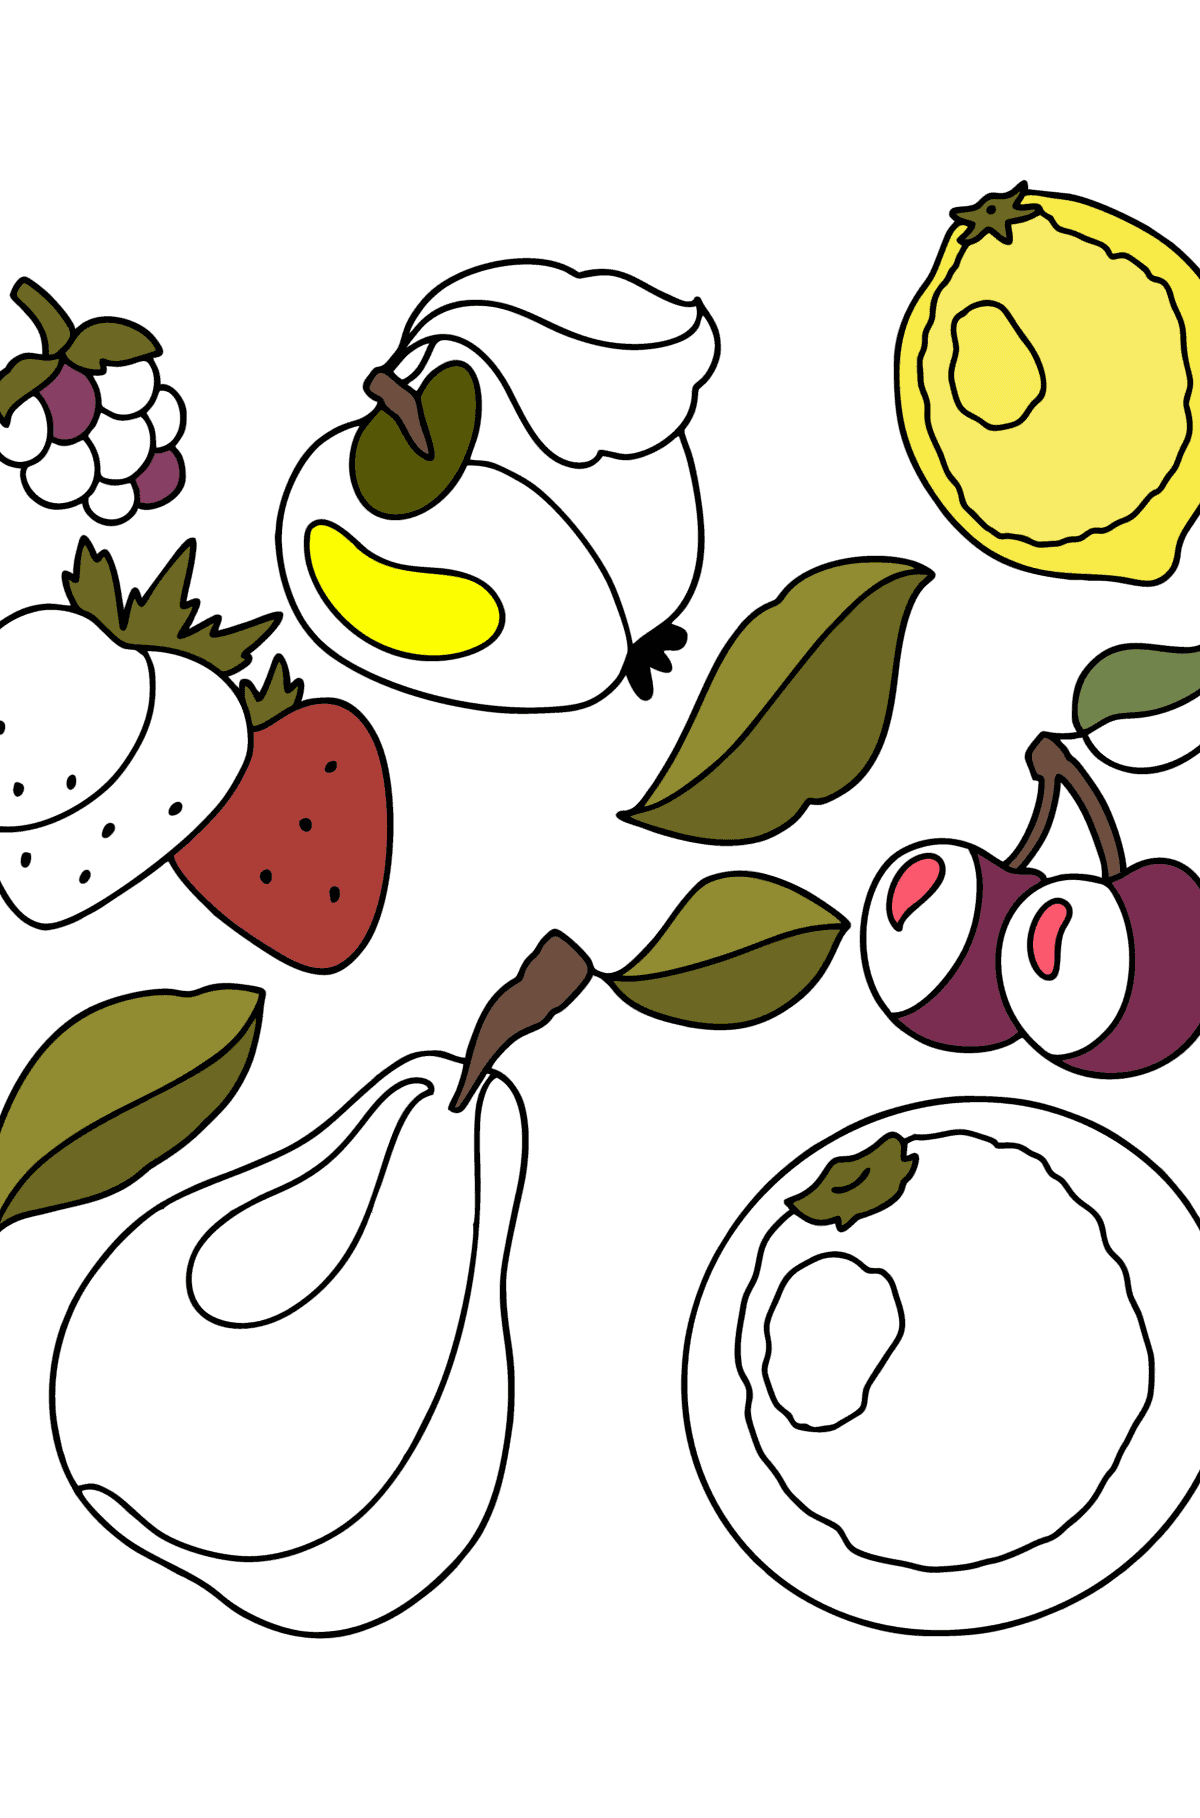 Målarbild Fruktset 1 - Målarbilder För barn